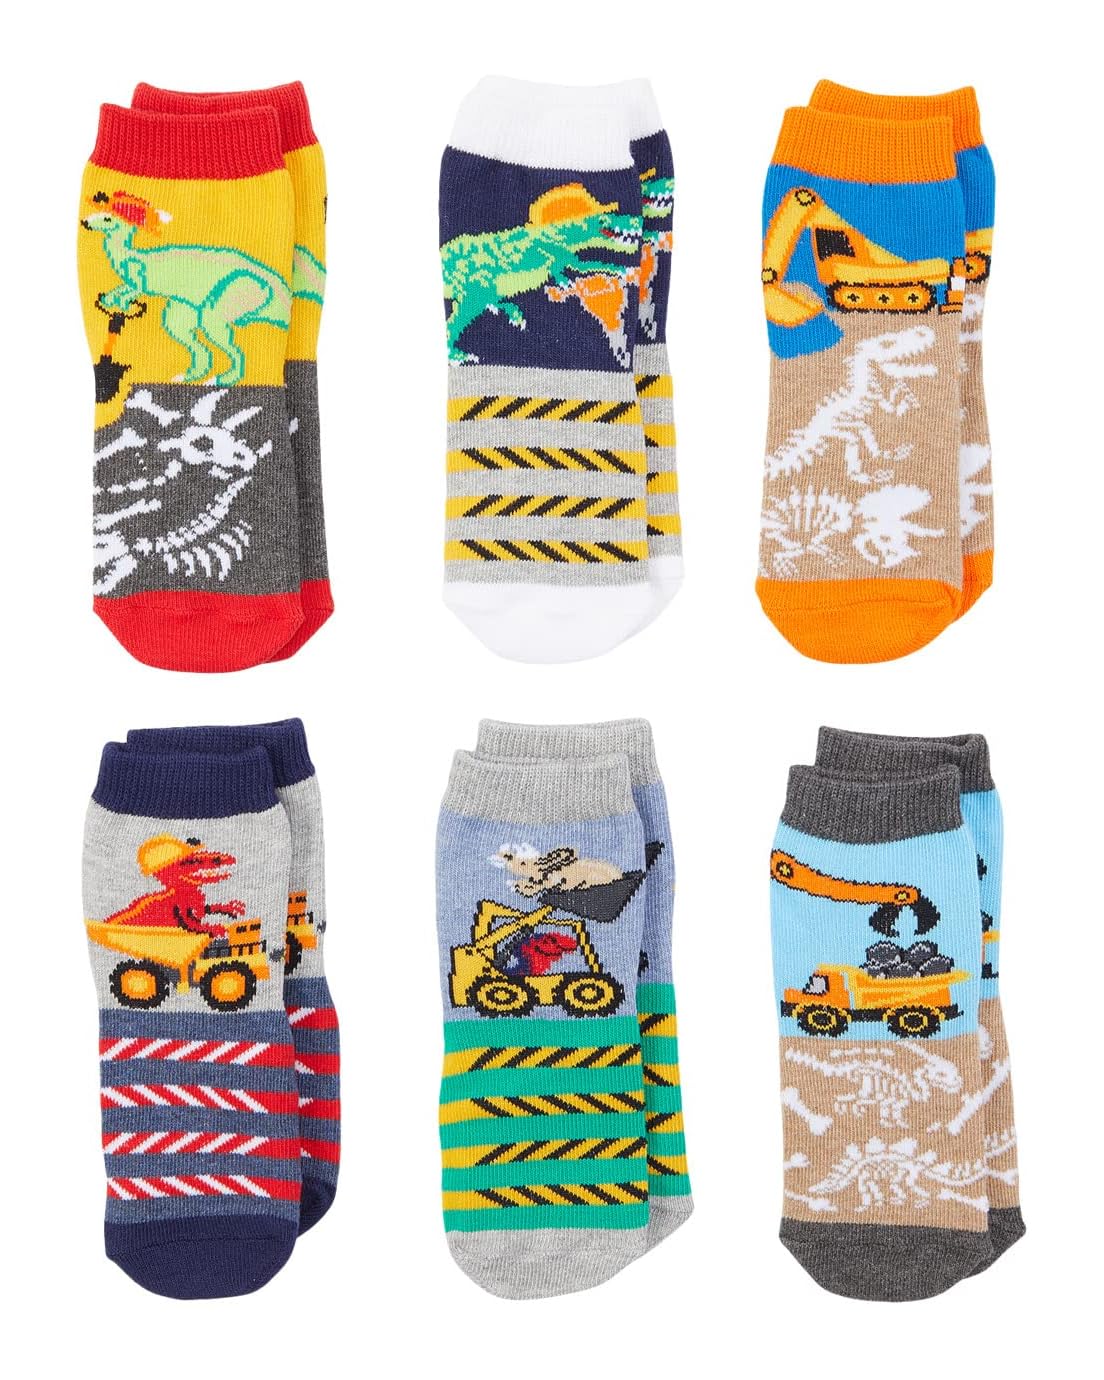 Jefferies Socks Dinosaur Construction Socks 6-Pack (Infant/Toddler/Little Kid/Big Kid)